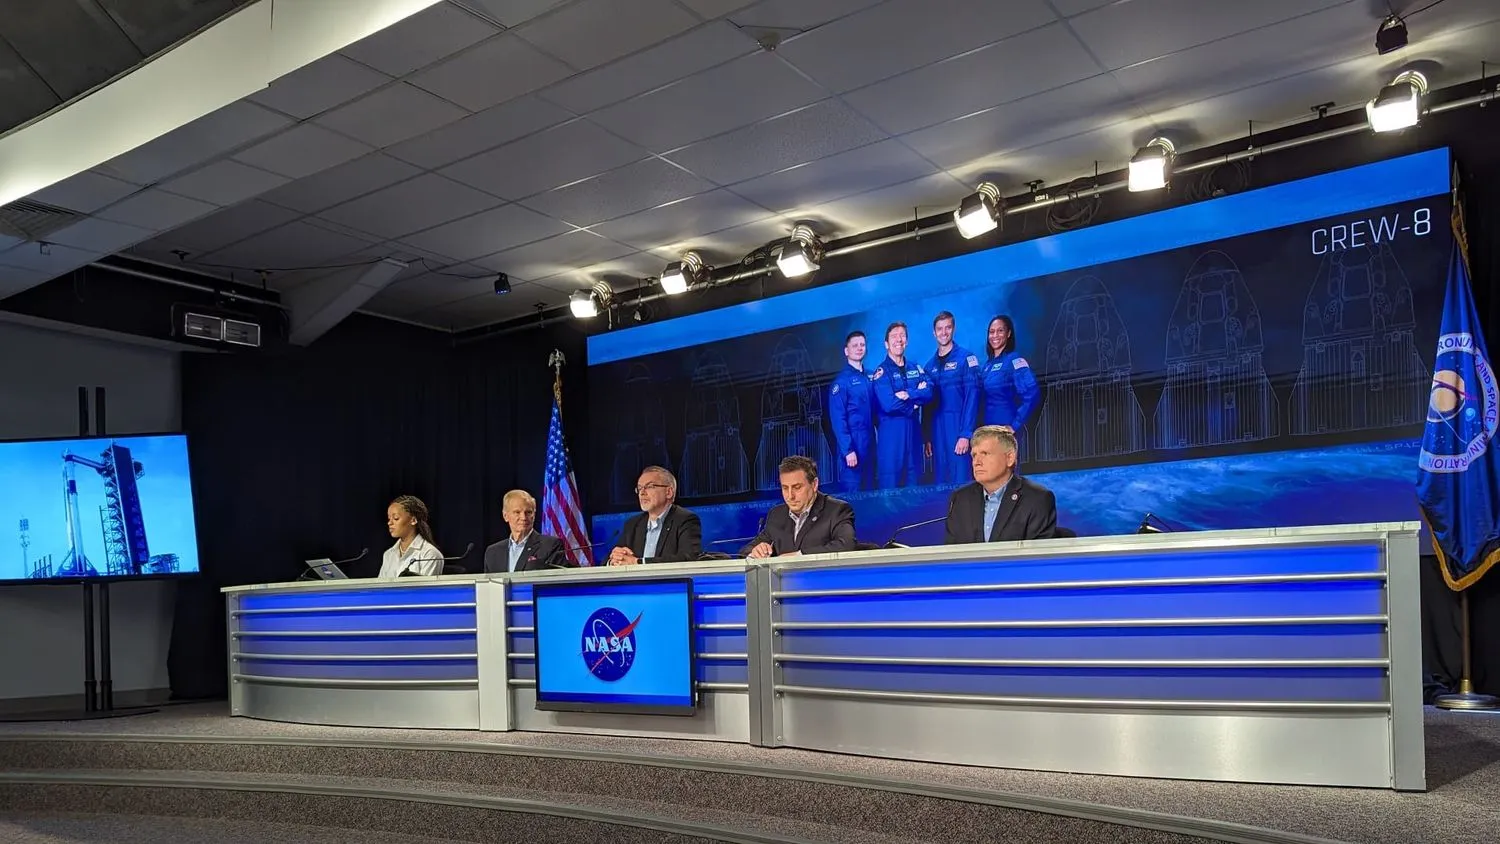 Mehr über den Artikel erfahren Jetzt wird’s spannend: NASA-Chef betont Sicherheit für Crew-8-Astronautenstart